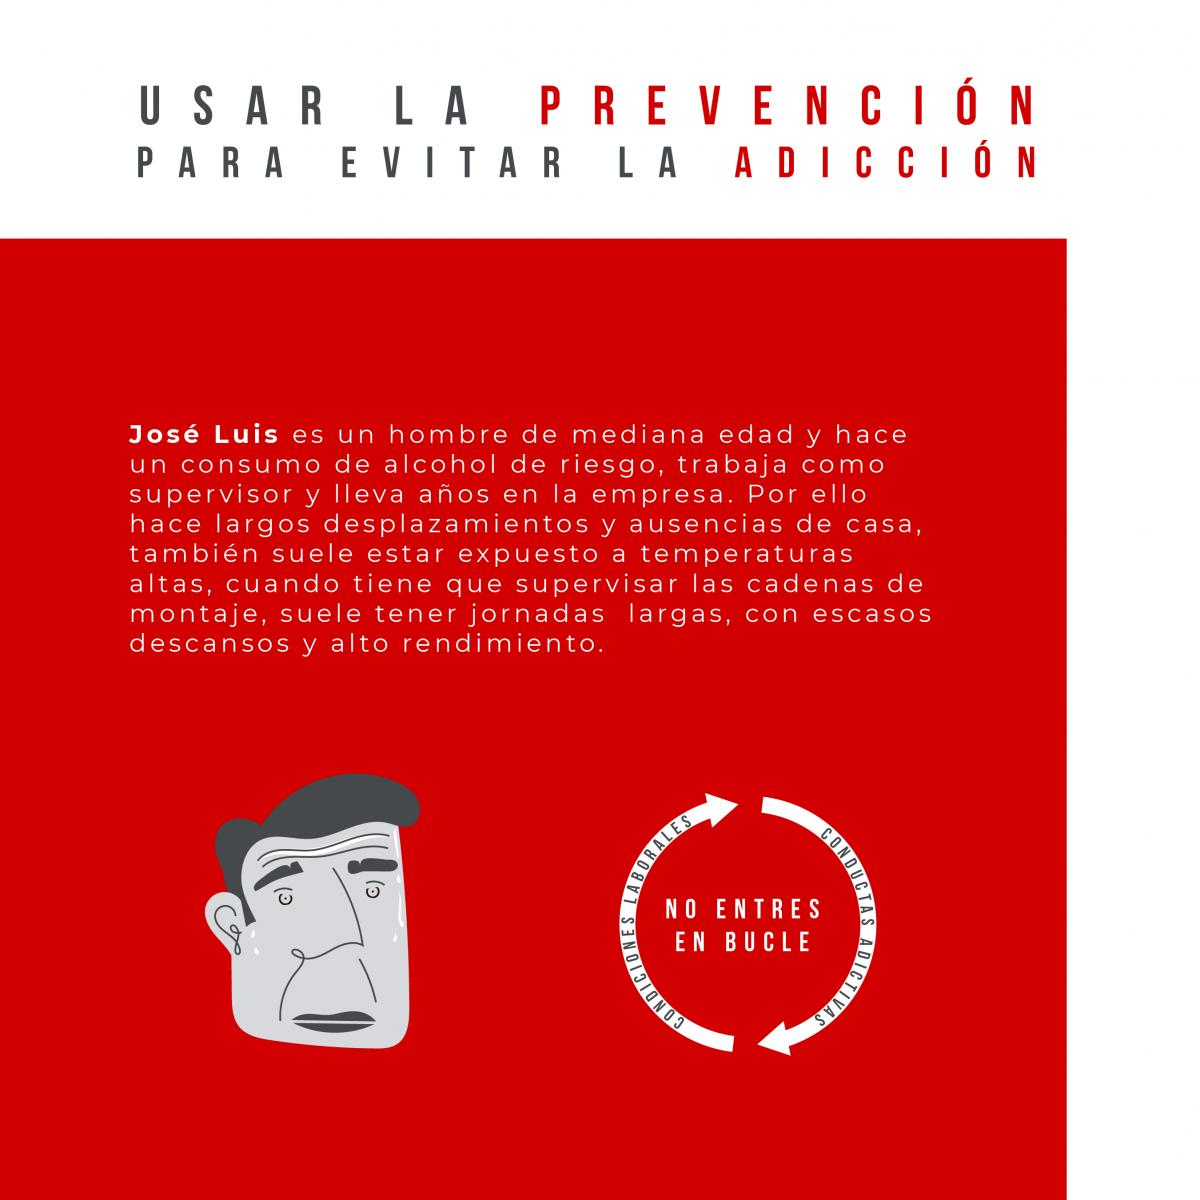 Campaña "Usar la prevención para evitar la adicción" Alcohol Facebook 2